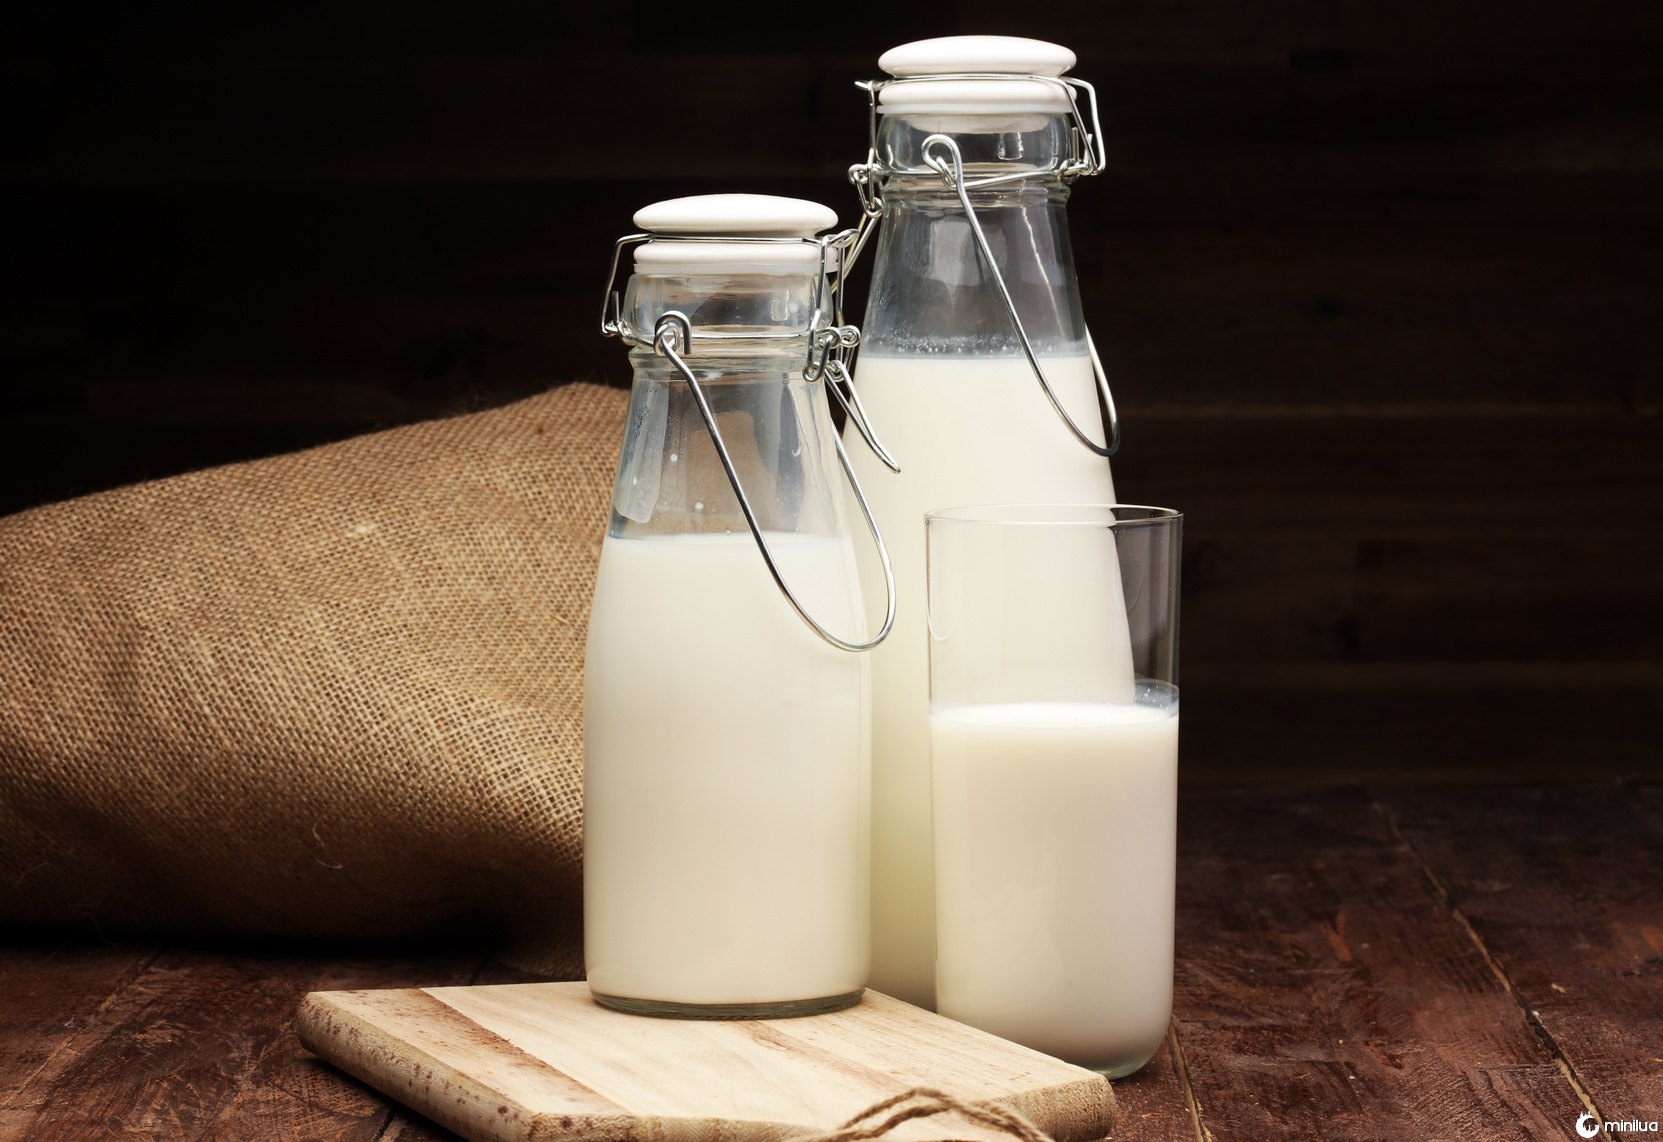 Existe um melhor horário no dia para tomar leite?